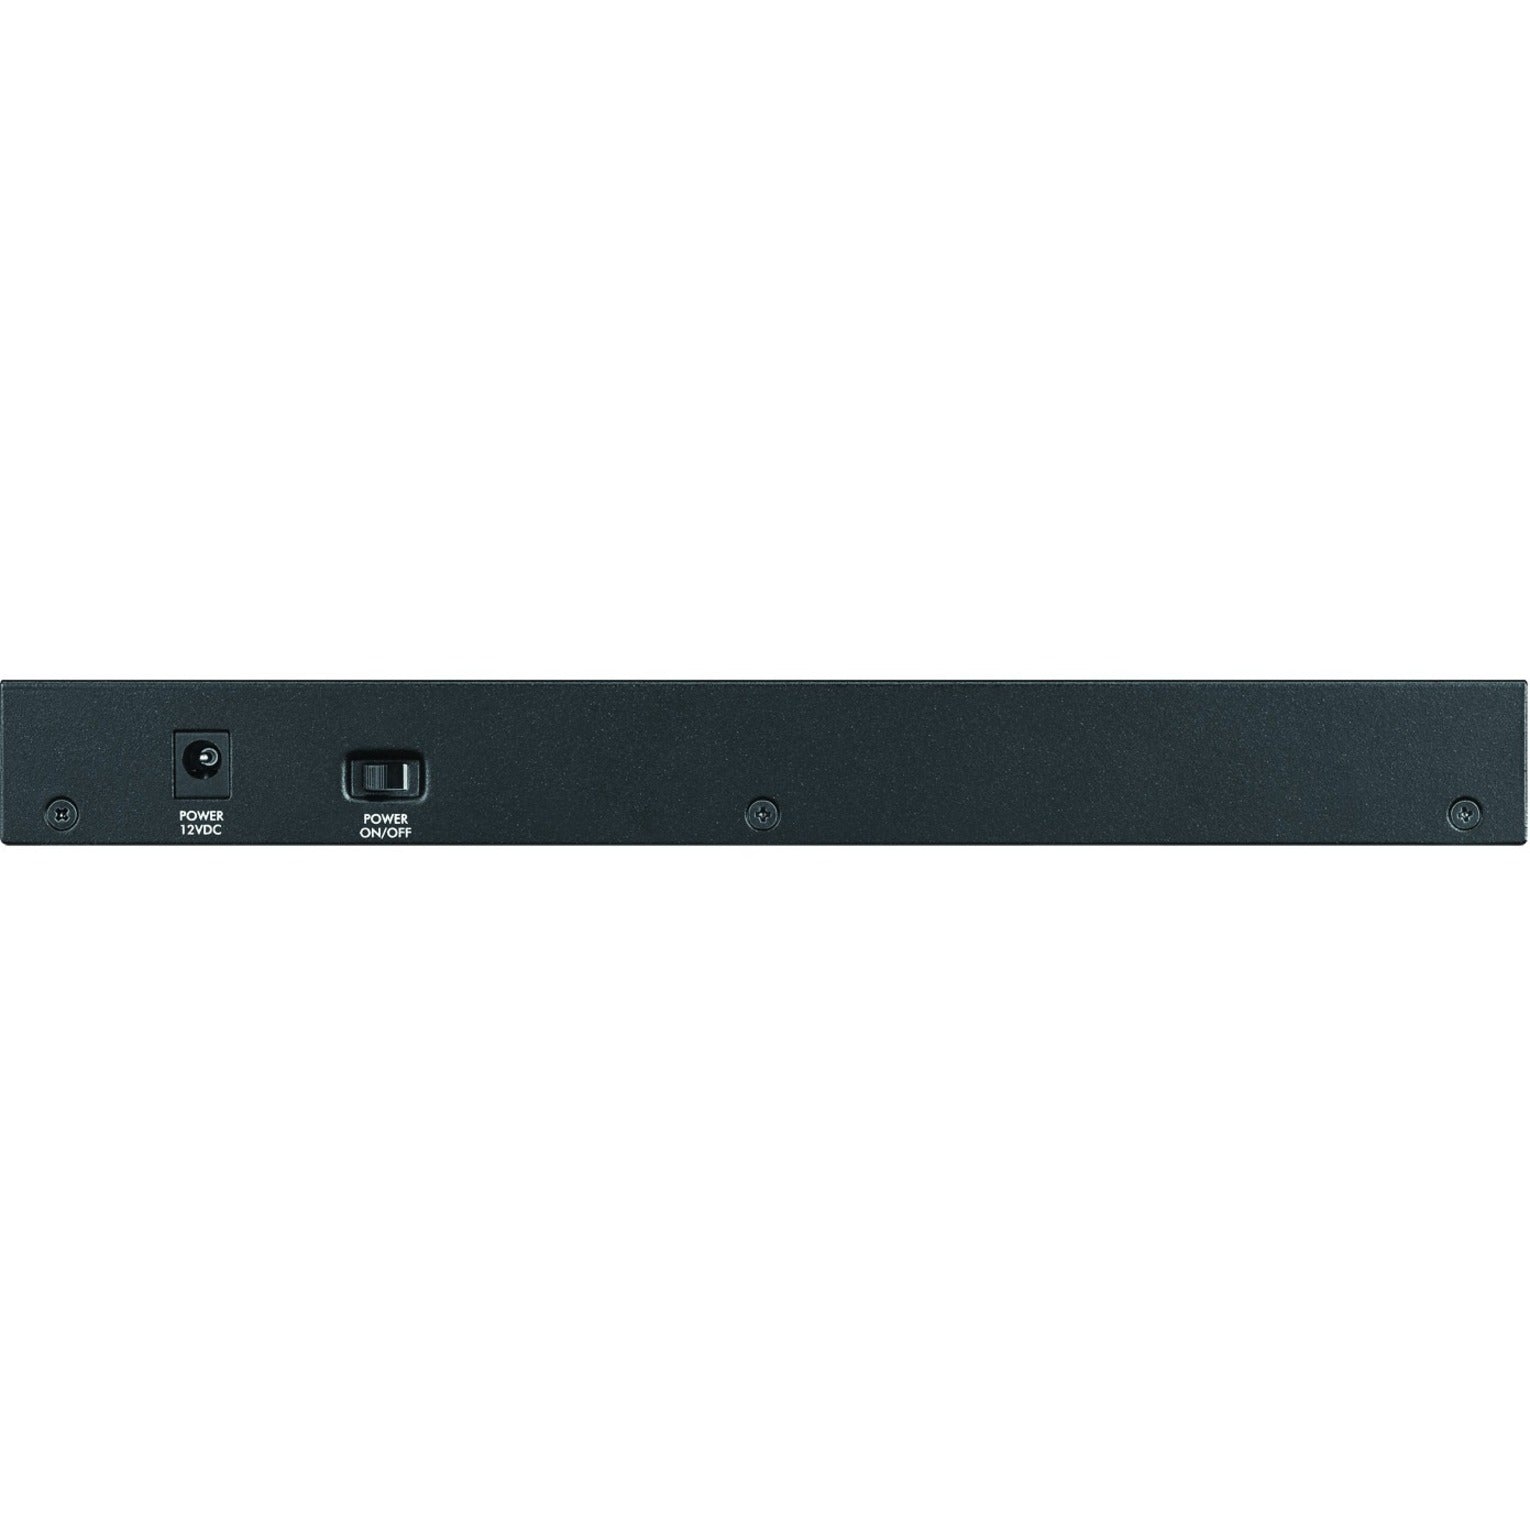 ZYXEL GS1900-8 8-Port GbE Smart Managed Switch, Fanless, Gigabit Ethernet, Lifetime Warranty